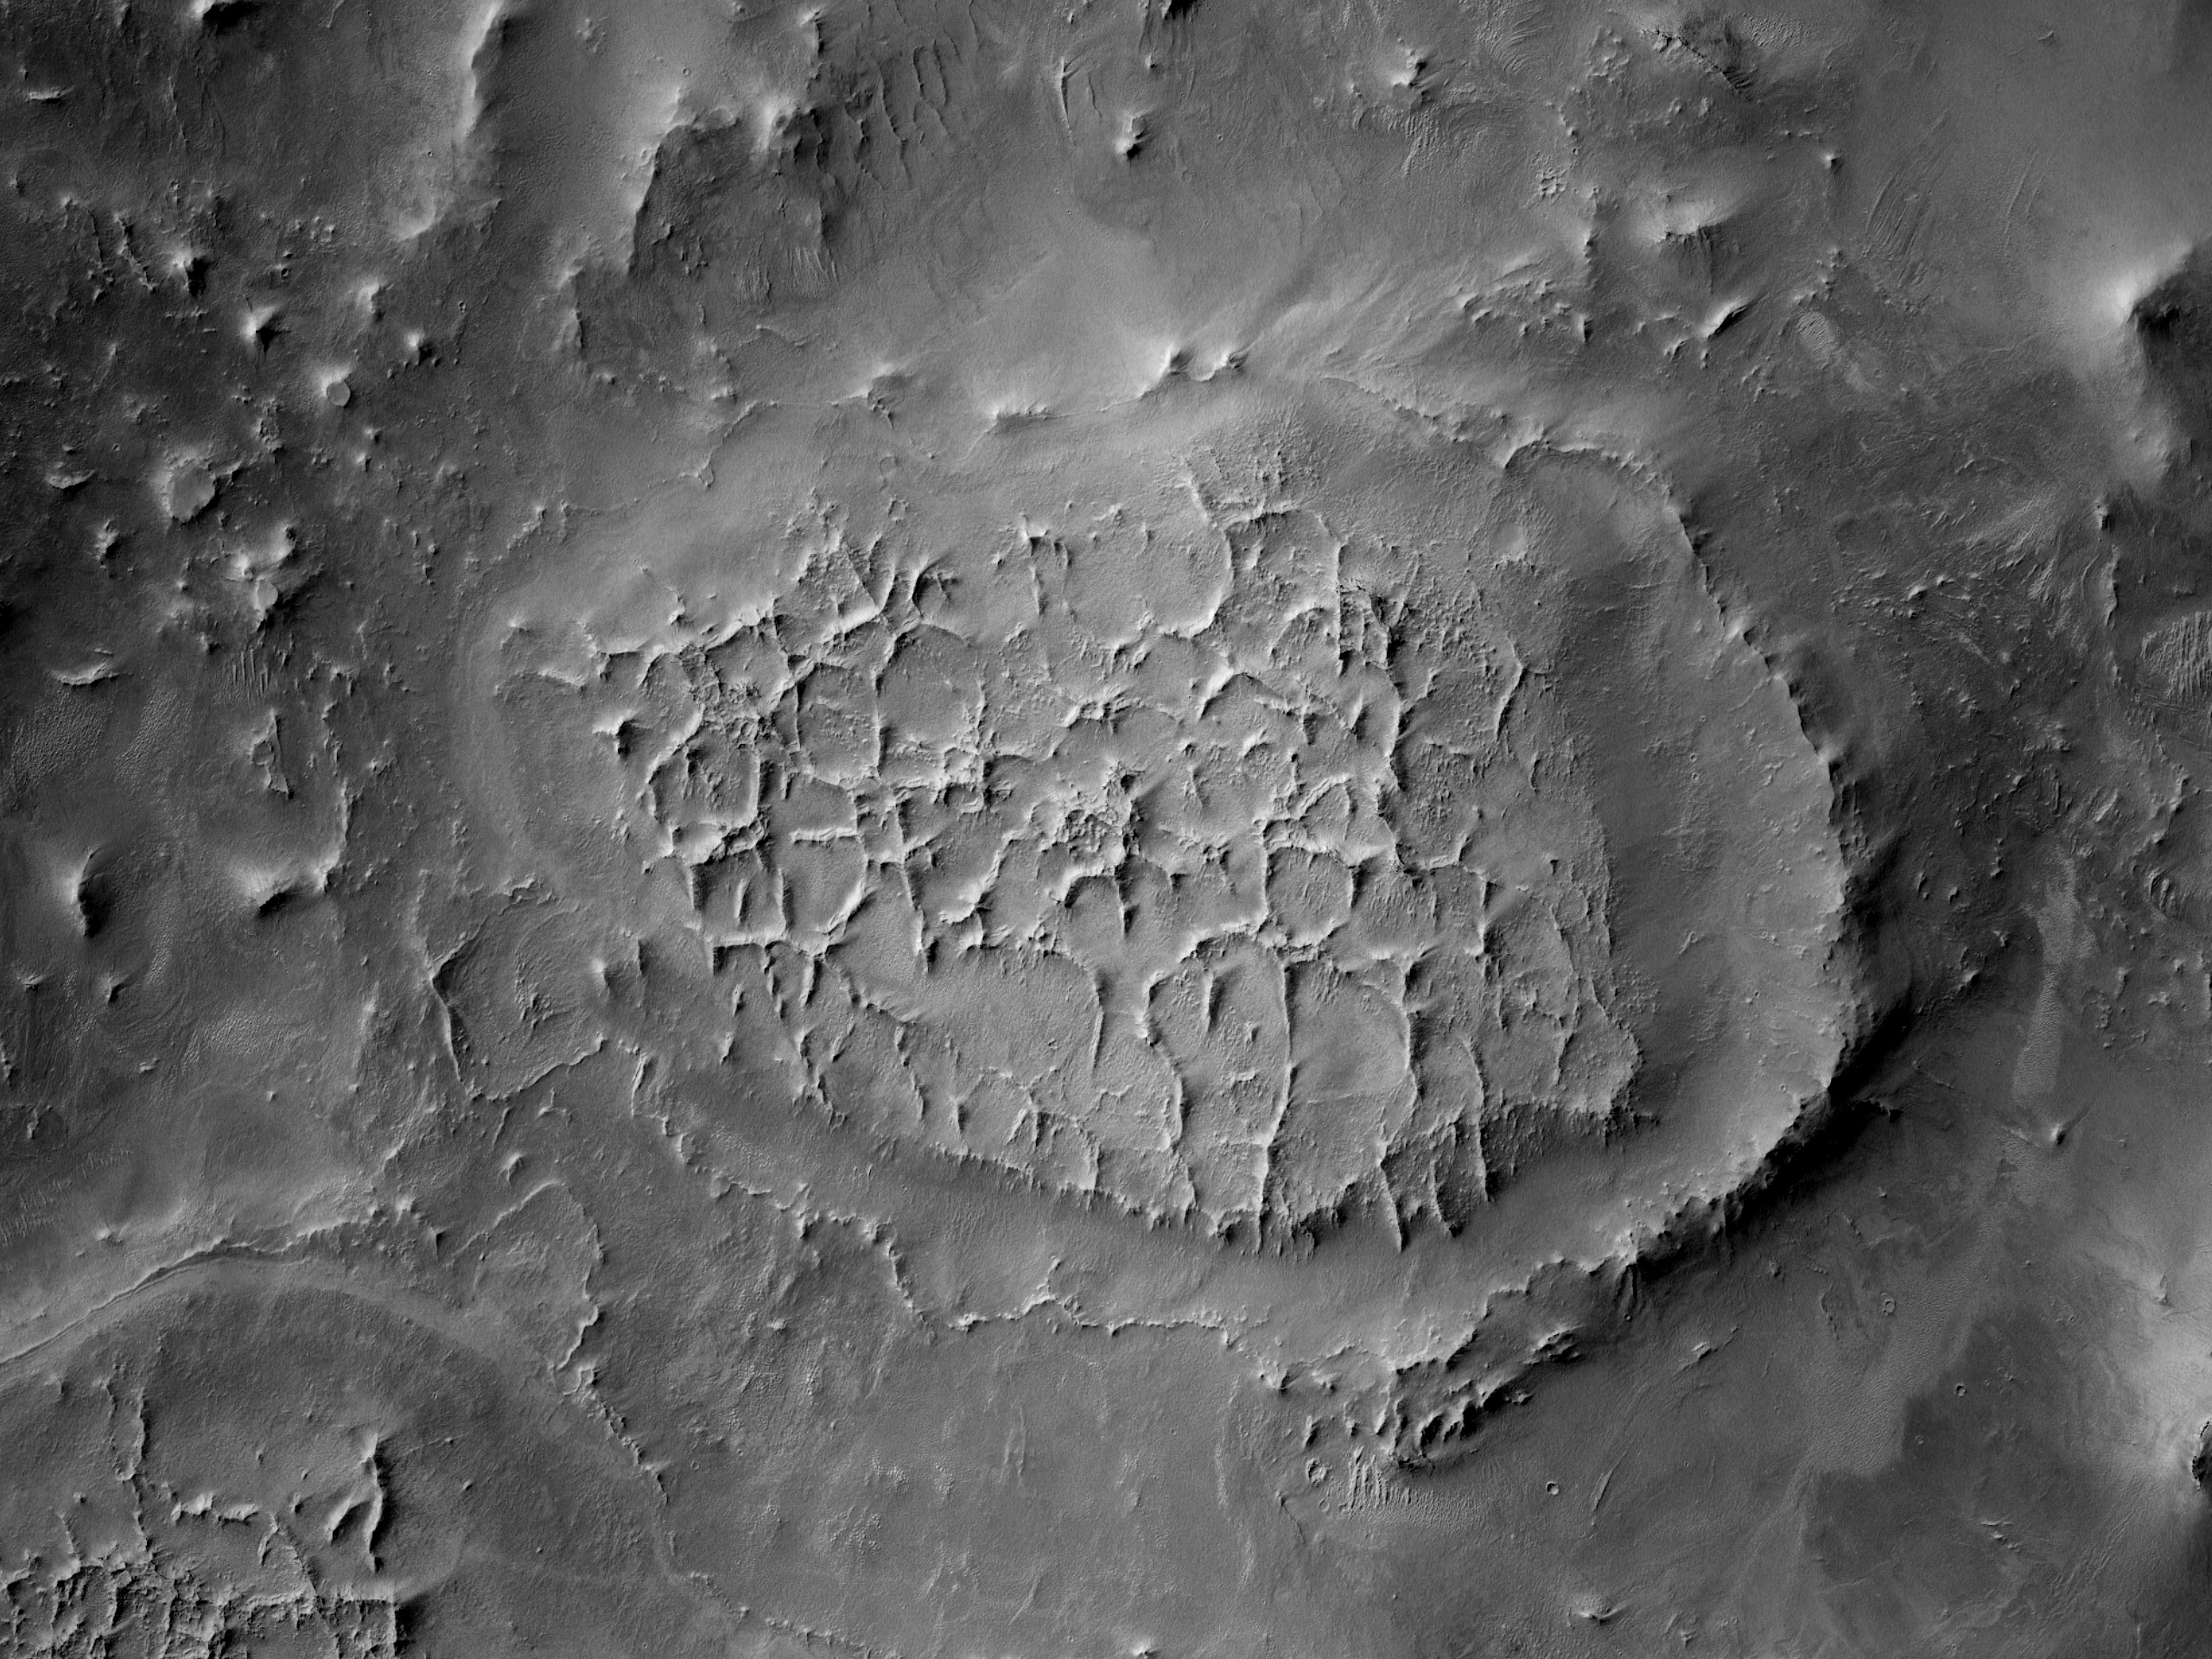 Inverted Polygonal Terrain in Schoner Crater